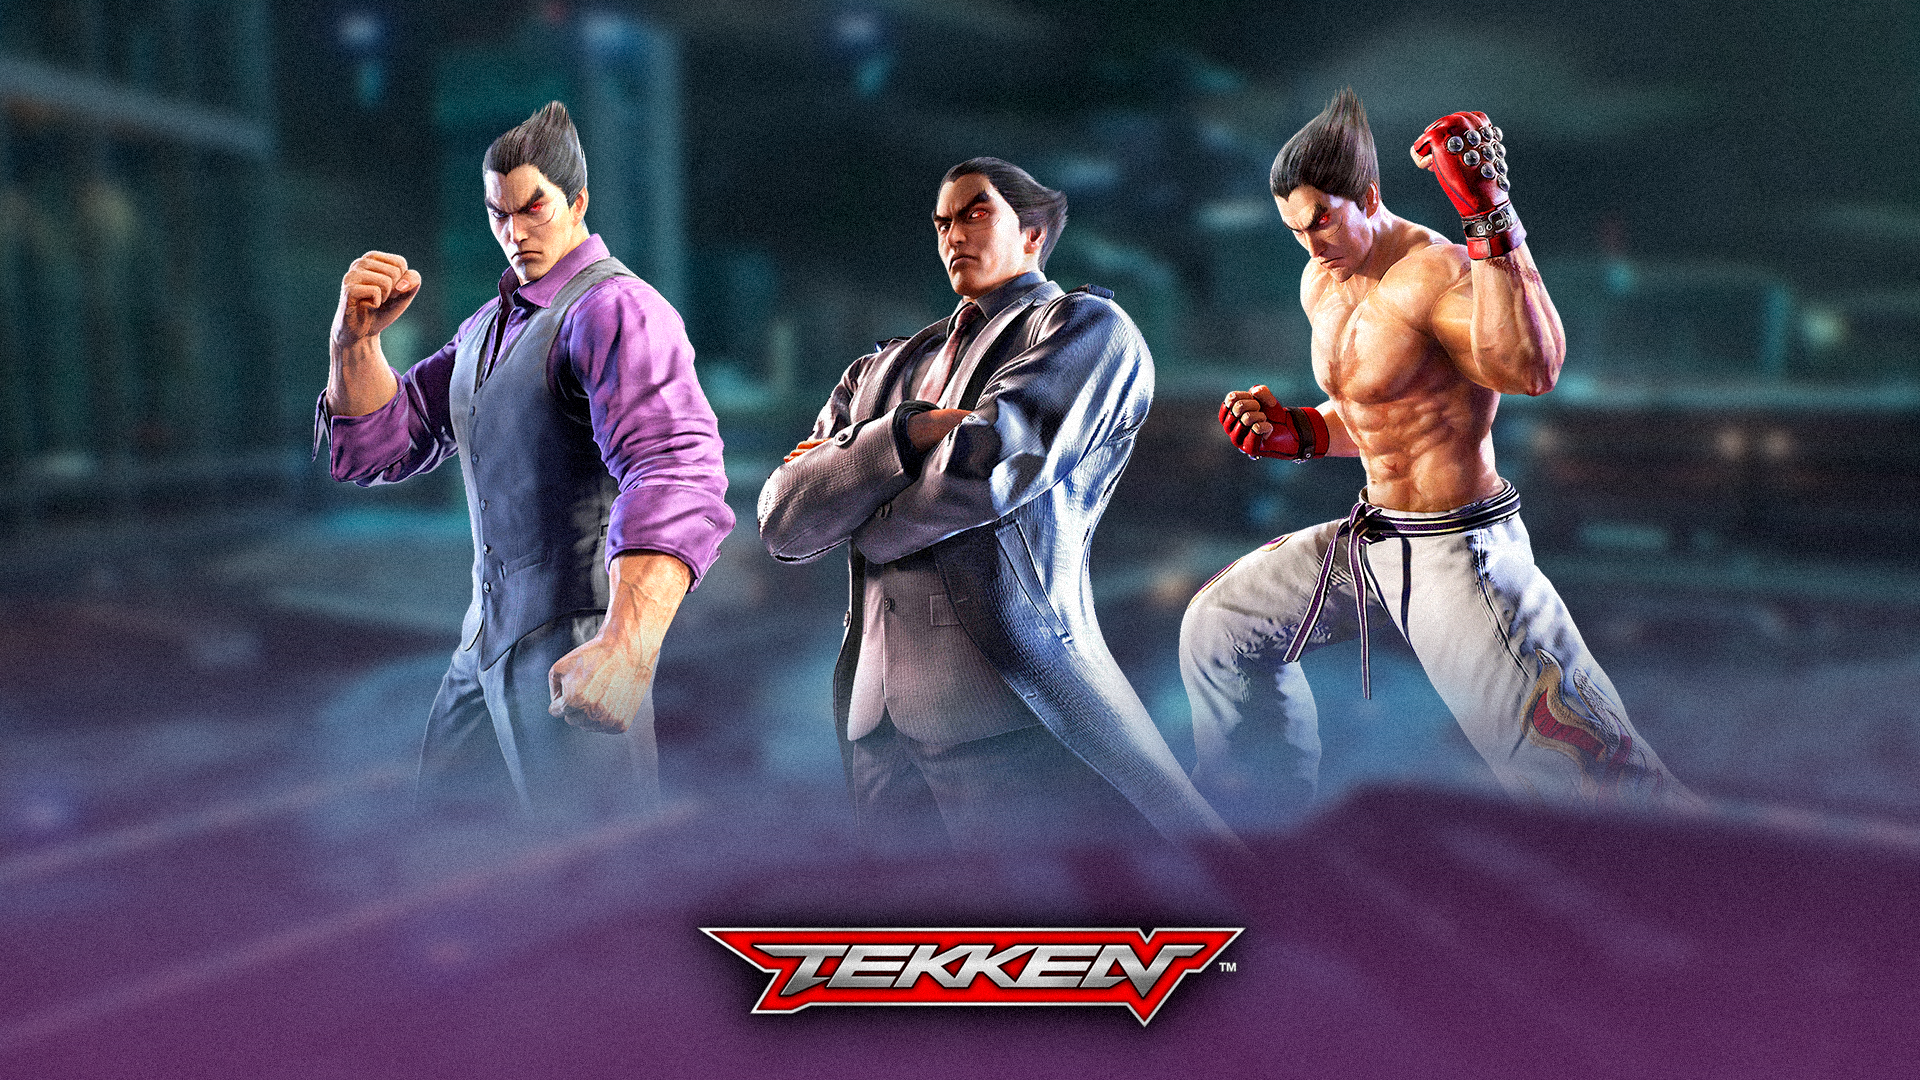 Tekken 7 Phone Wallpaper - Kazuya mishima by CR1ONE on DeviantArt